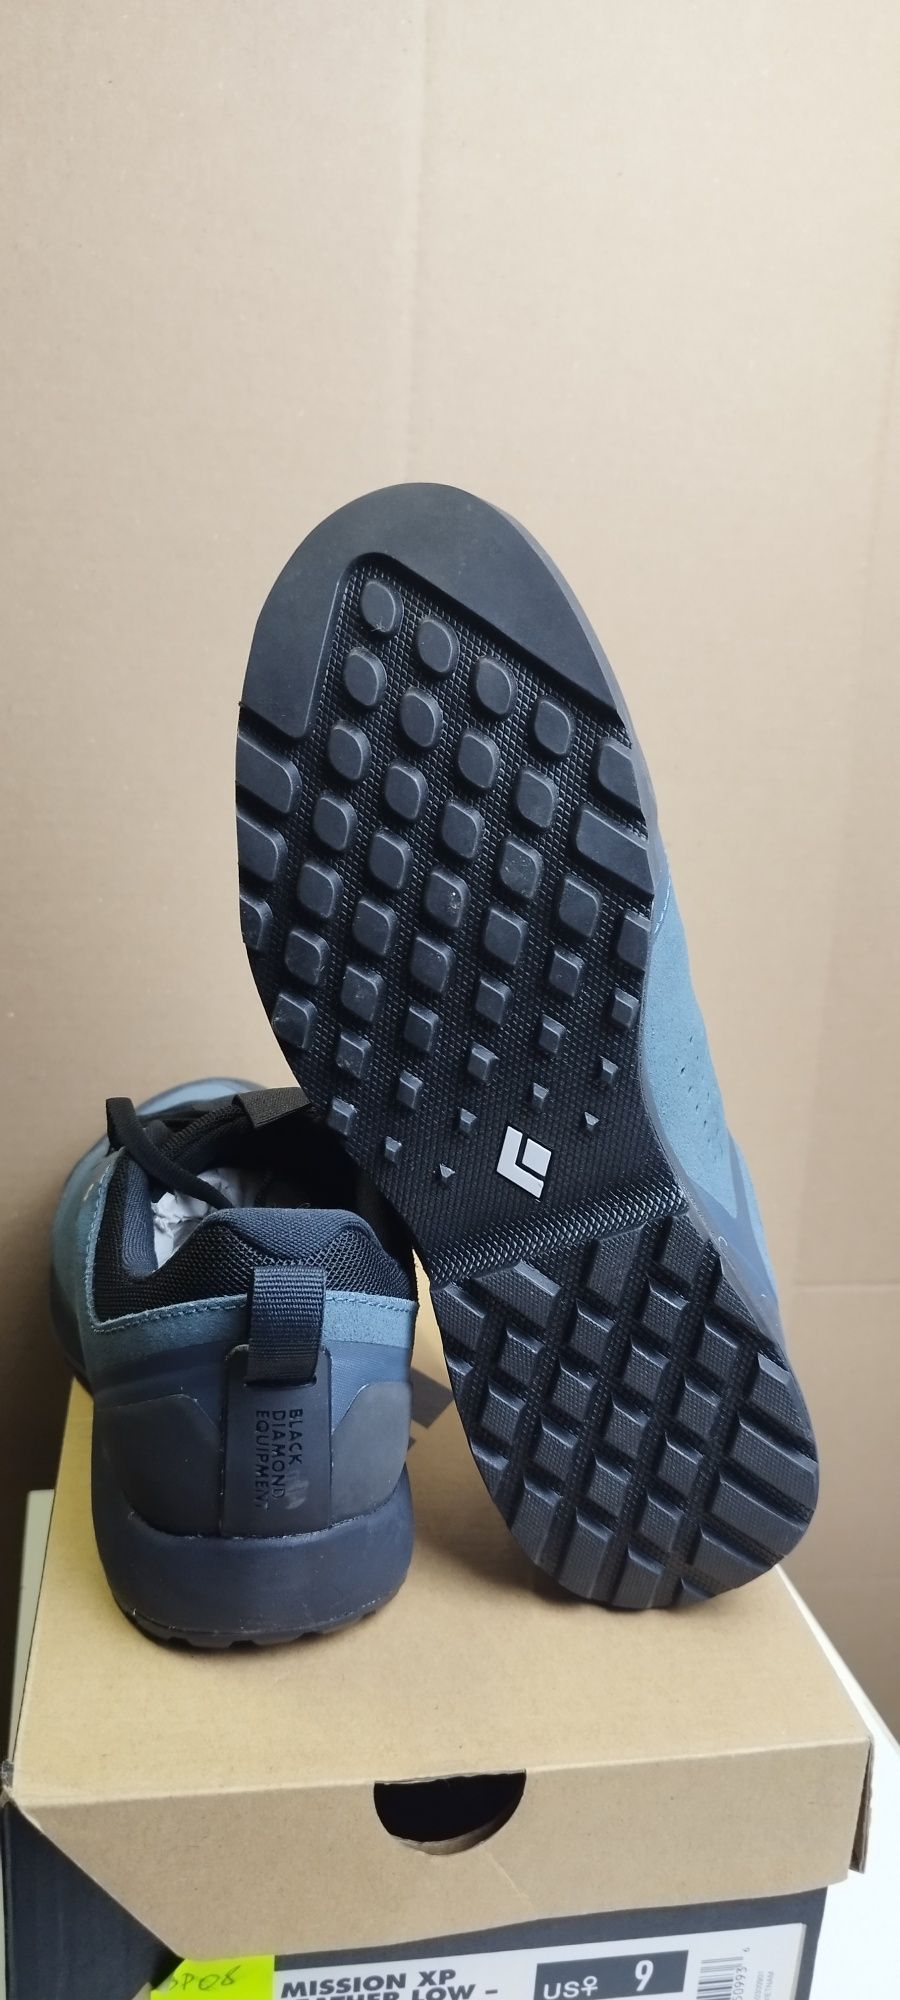 Nowe damskie buty trekkingowe Black Diamond Mission XP 40 (25,5cm)